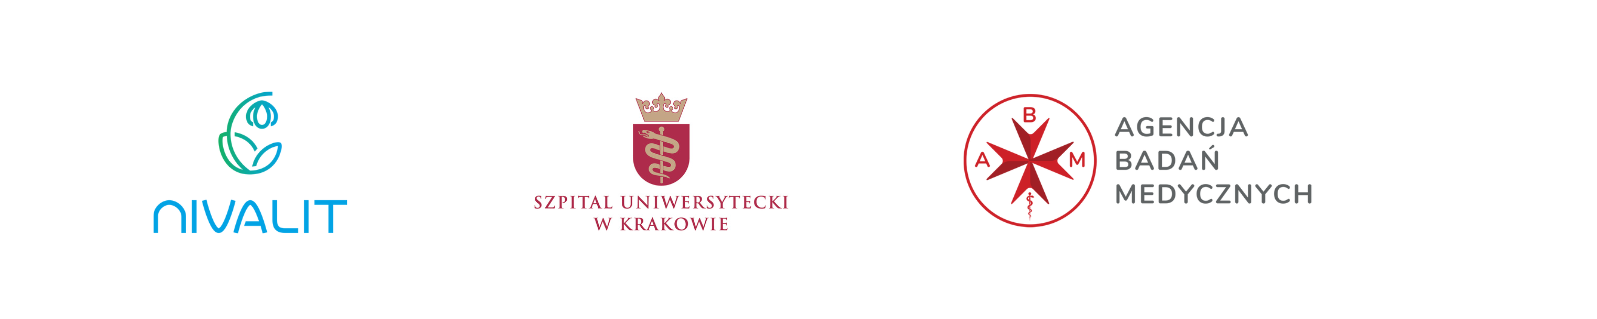 Logotypes of Nivalit University Hospital andABM